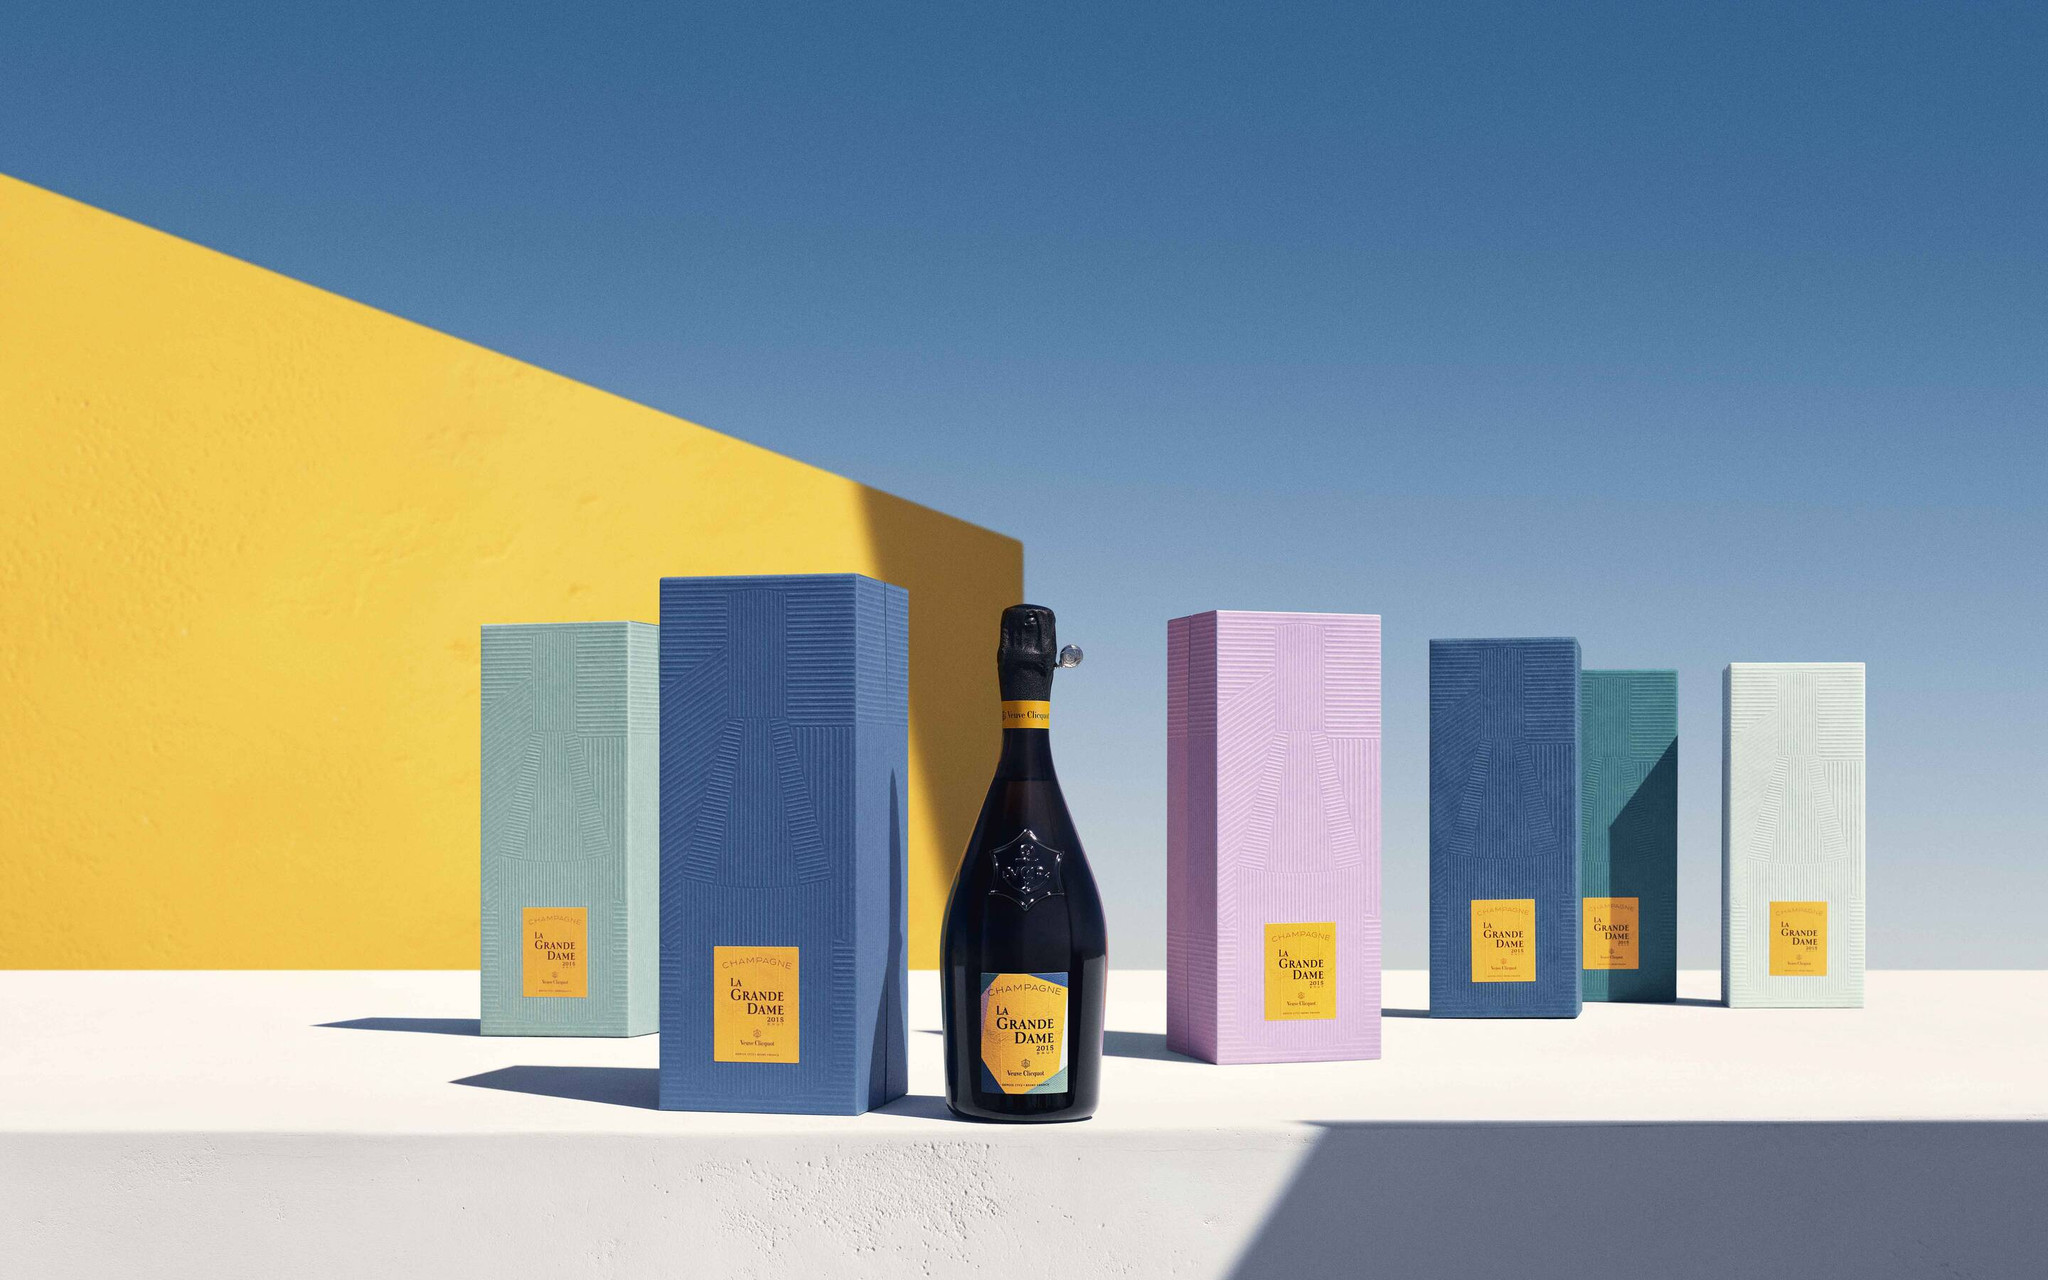 Champagne Veuve Clicquot 2015, Champagne Veuve Clicquot